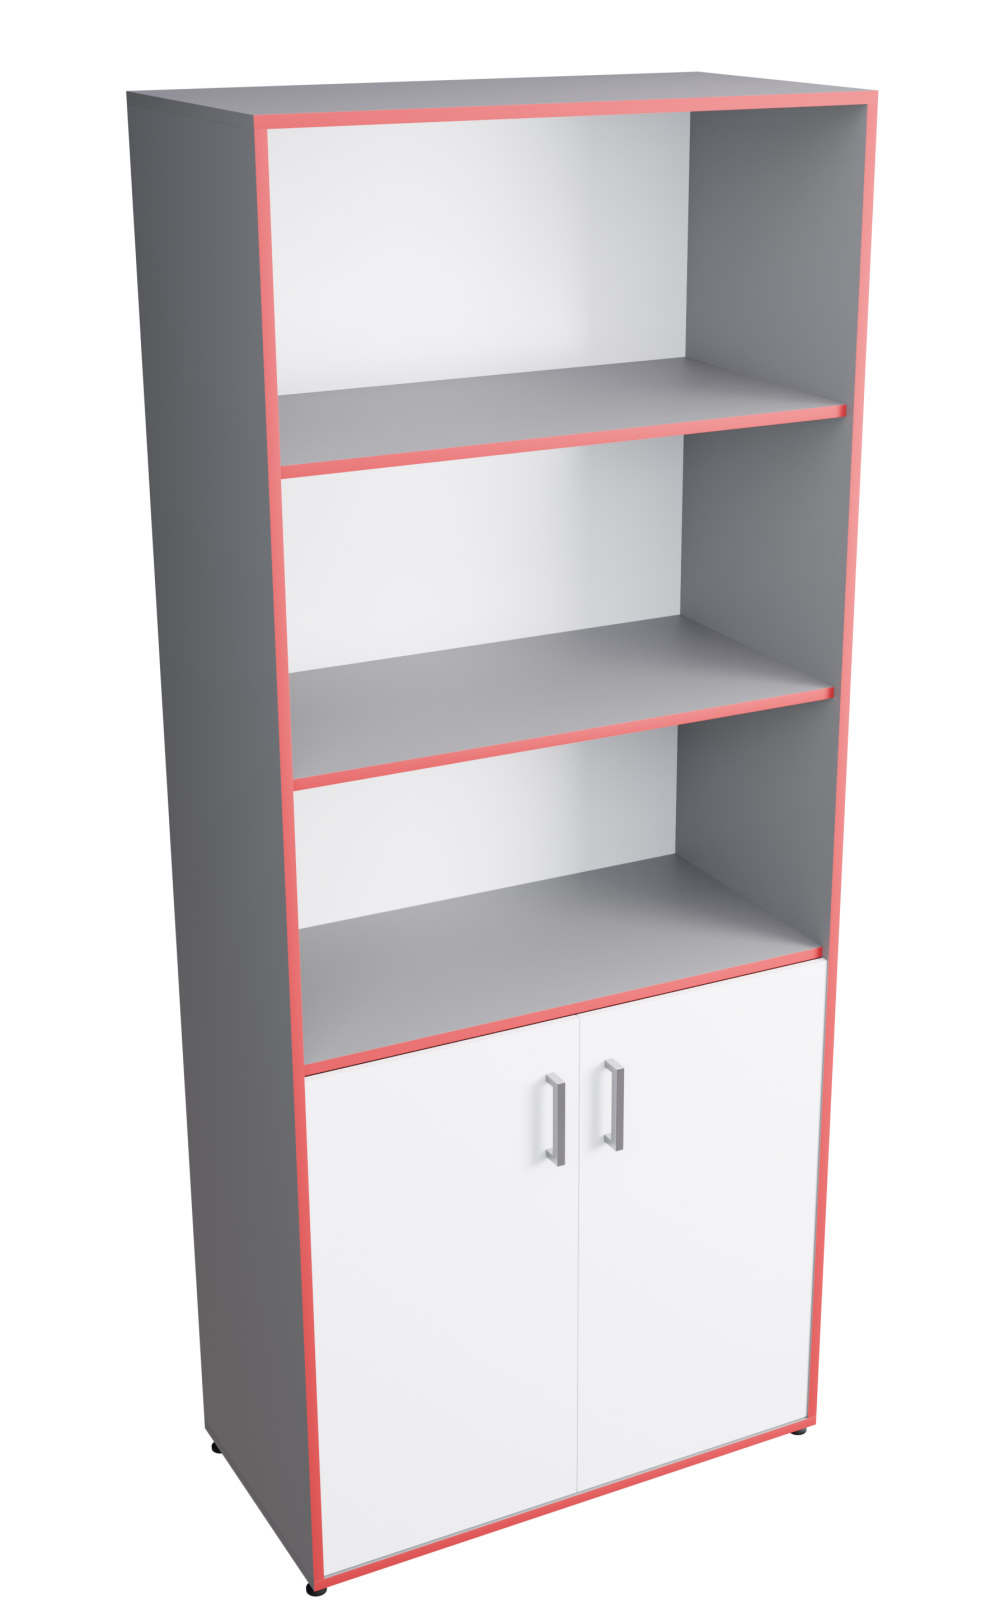 Стеллаж полуоткрытый. Шкаф для учебных пособий «точка роста» (ЛДСП 22 мм, к. синий, ф. белый). Шкаф широкий полуоткрытый. Шкаф стеллаж полуоткрытый. Шкаф для учебных пособий полуоткрытый.